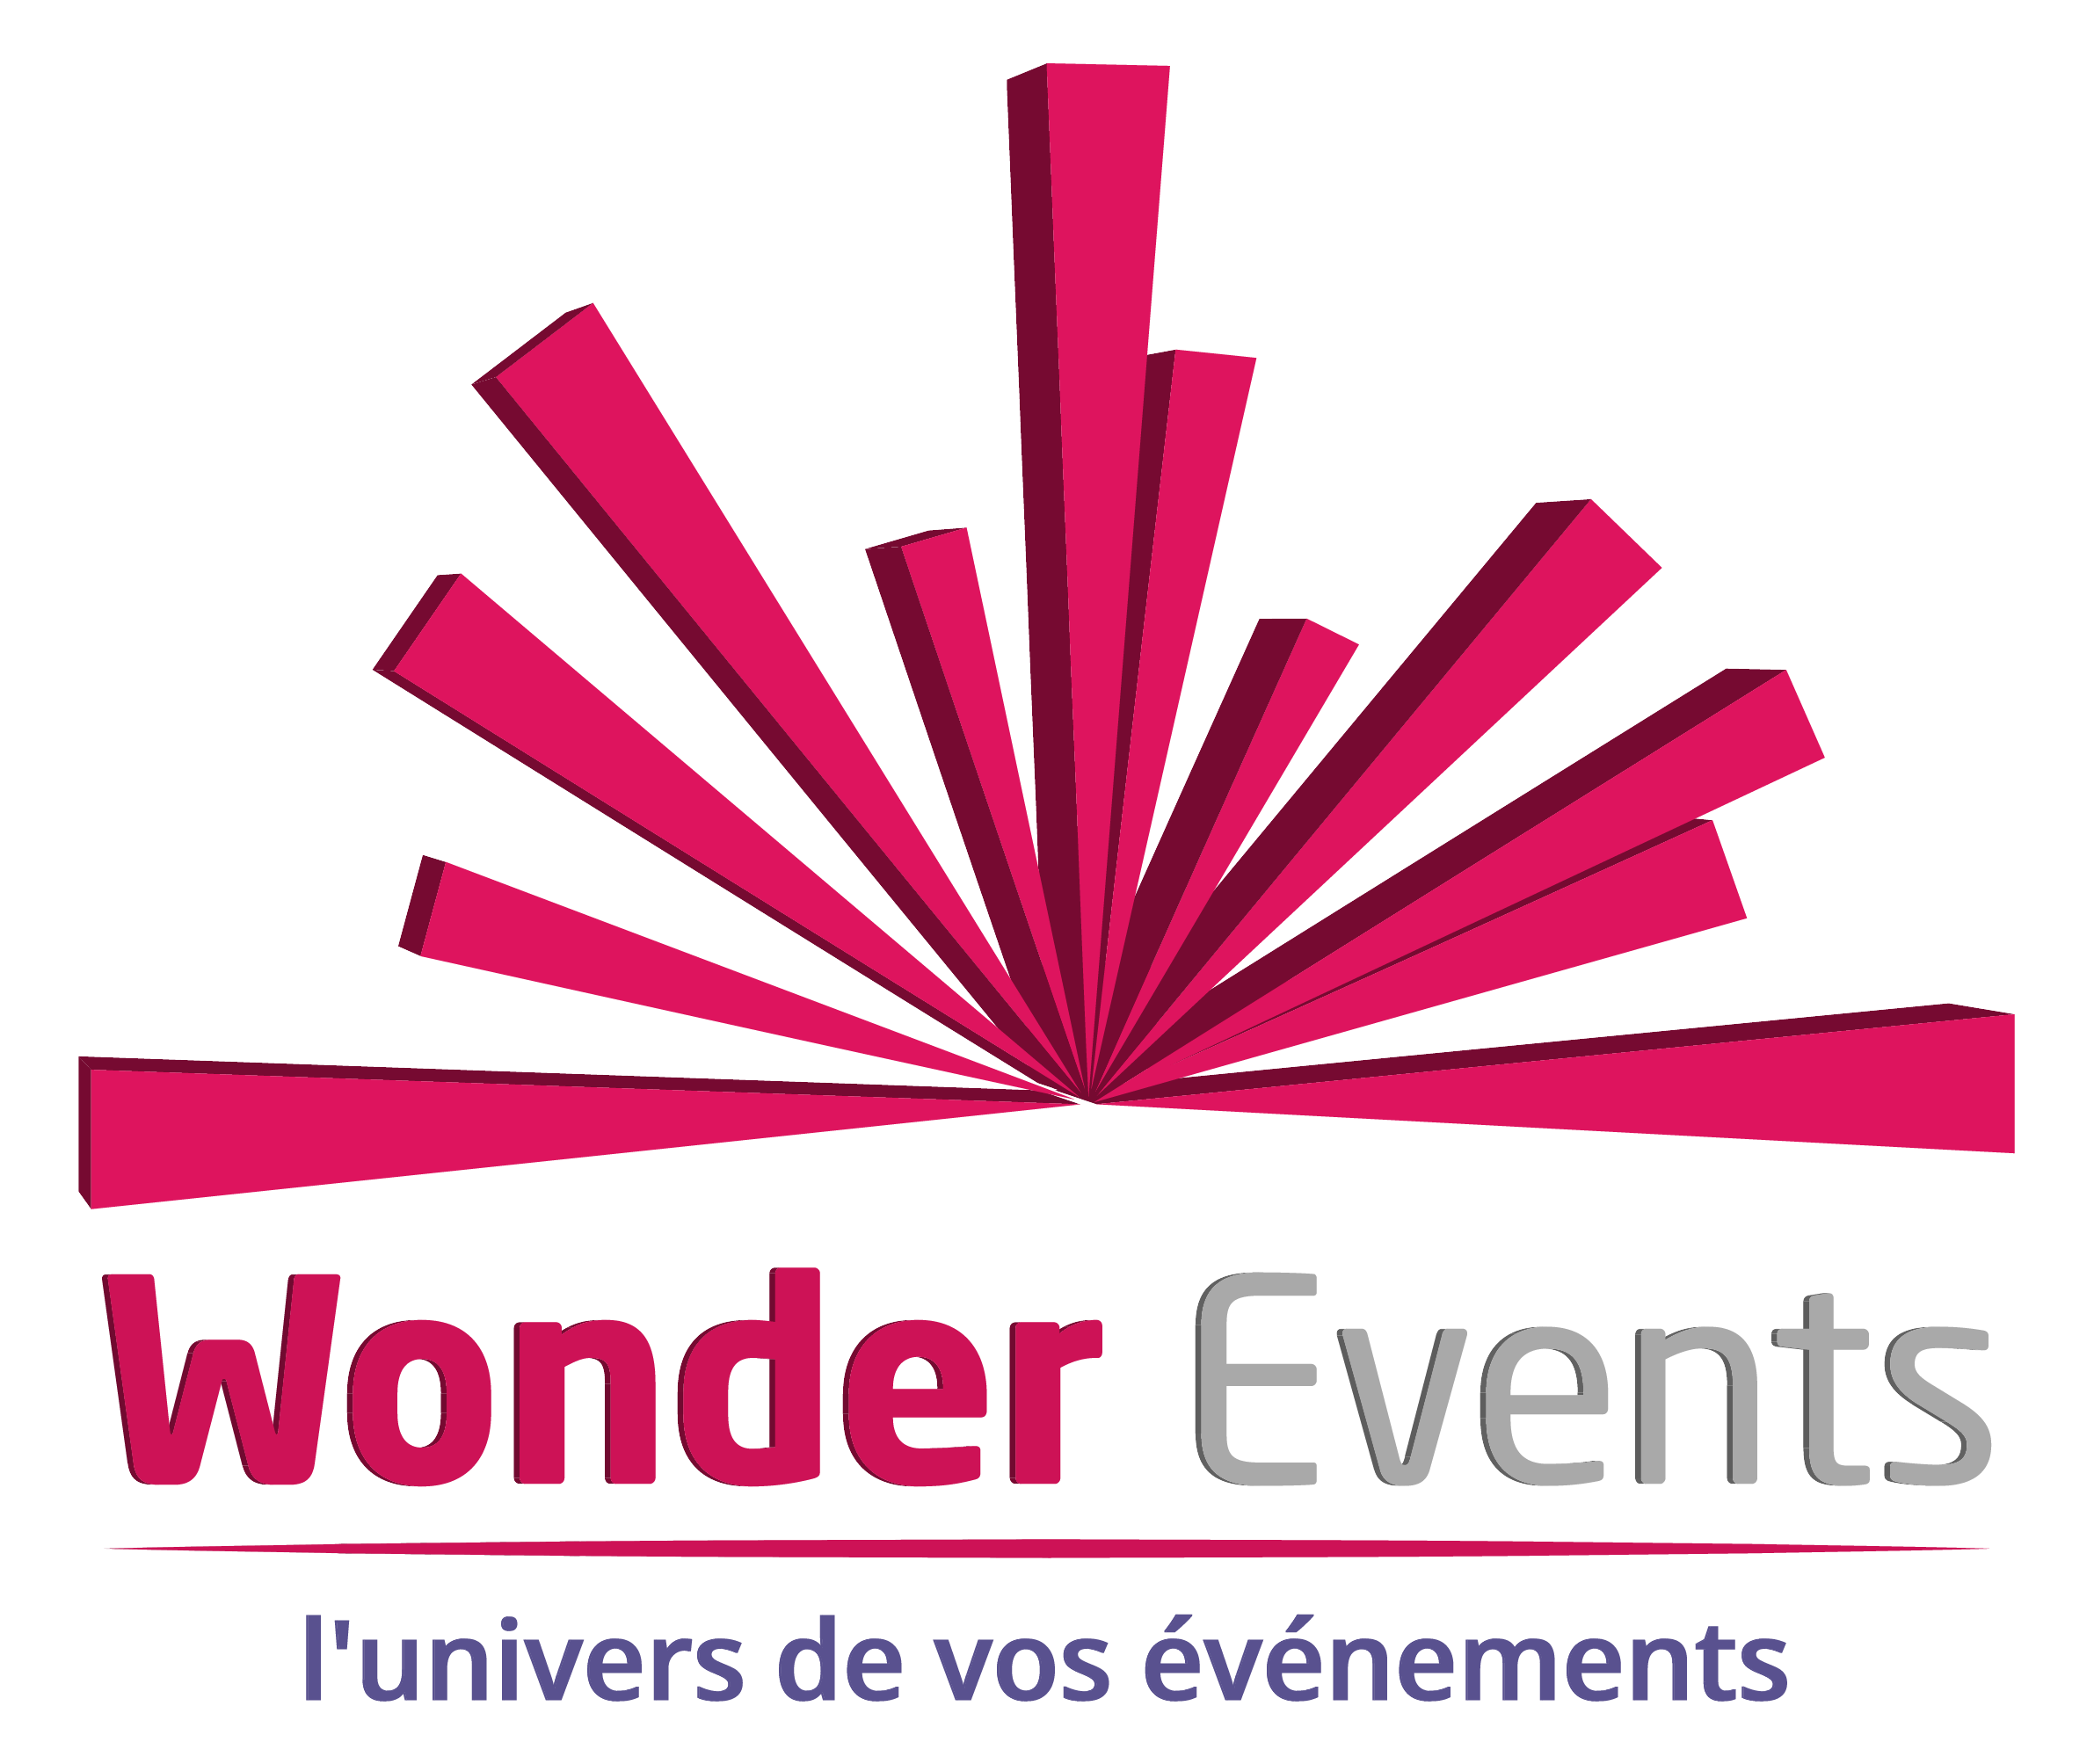 Wonder Events